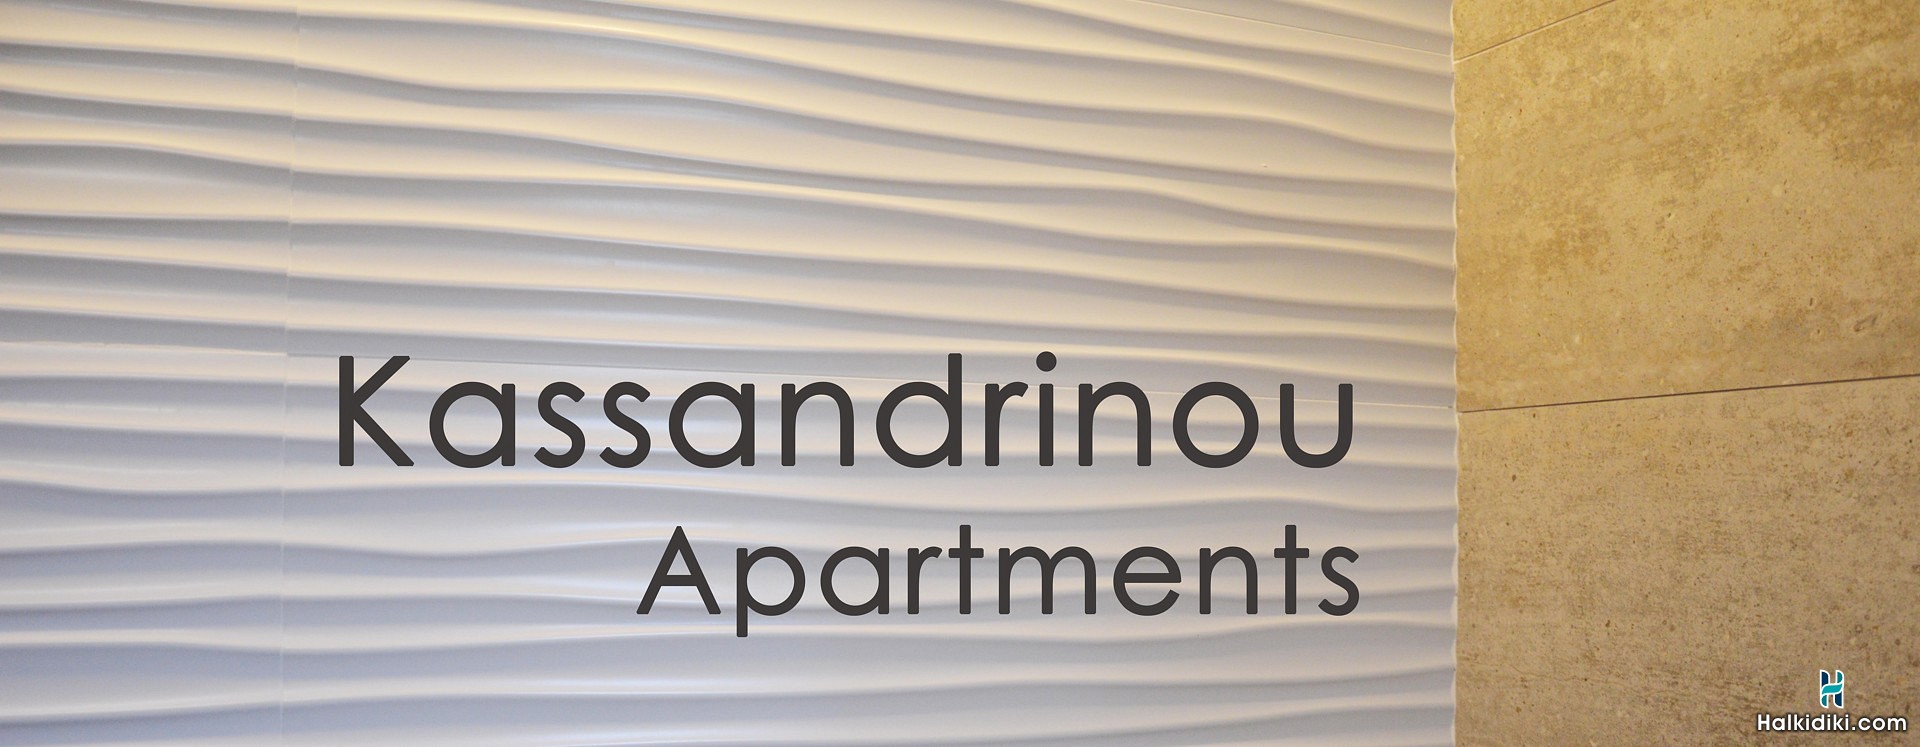 Kassandrinou Apartments